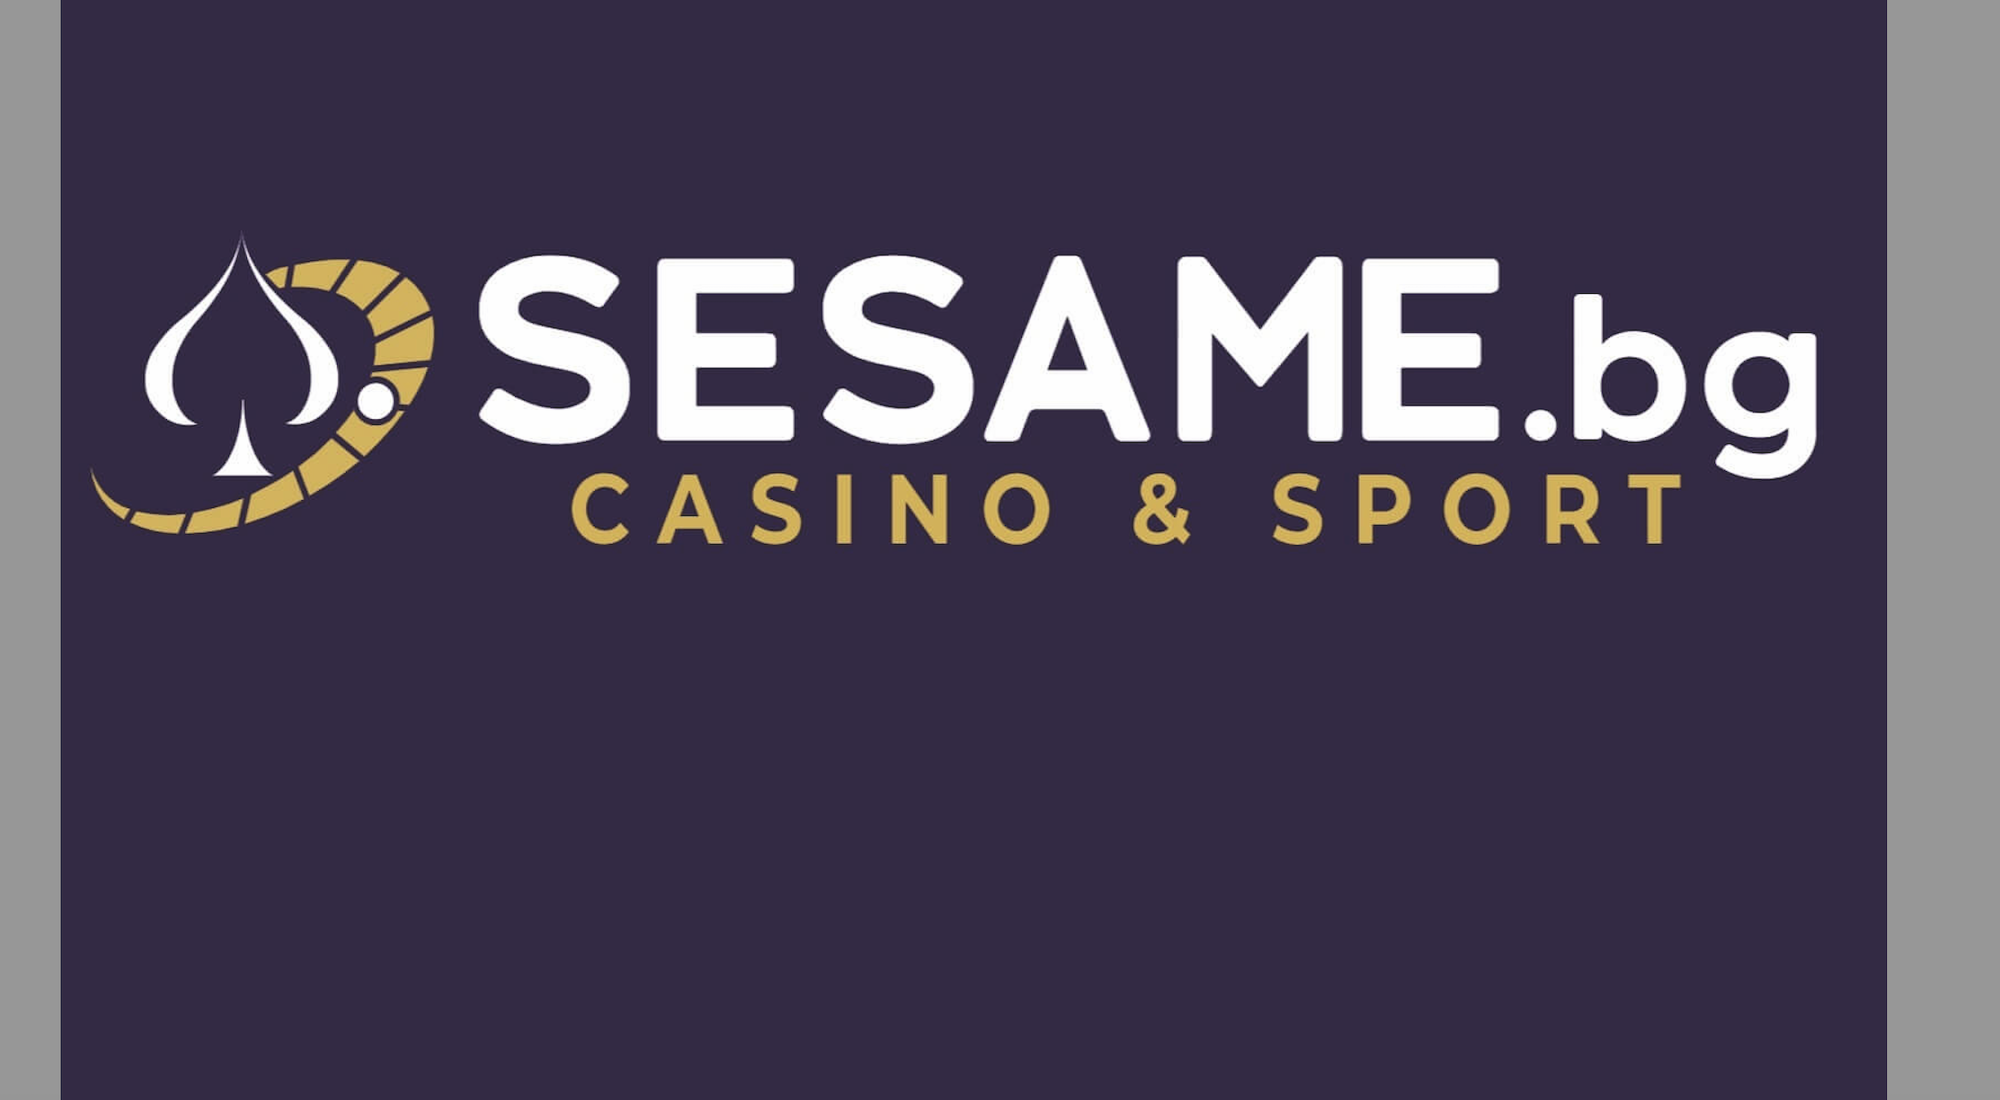 Основни правила за успешна игра при спортните залози на Sesame